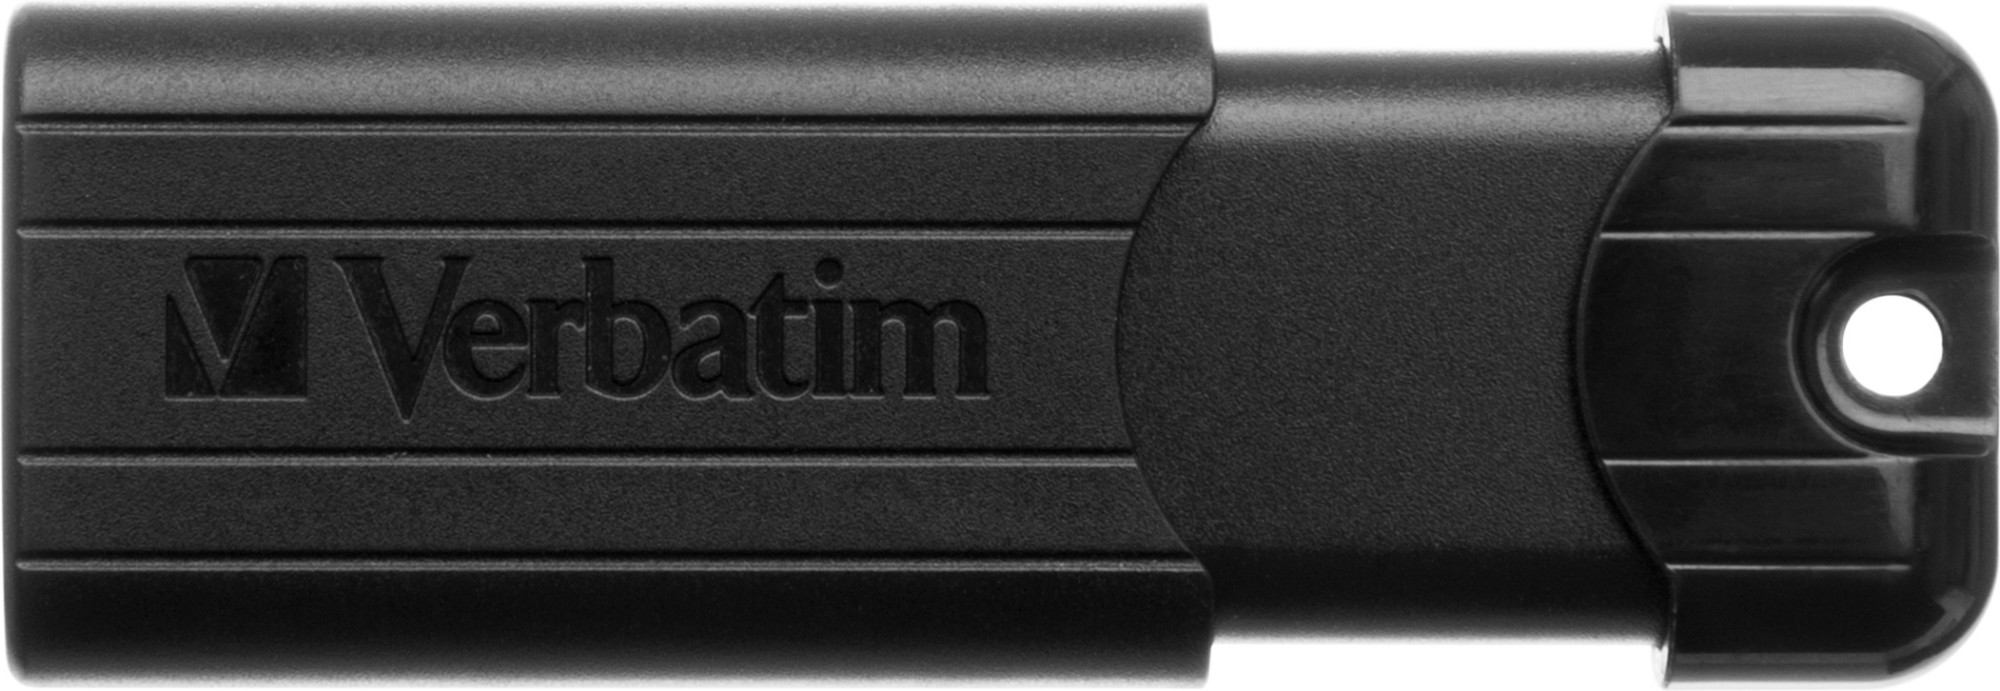 Verbatim PinStripe 3.0 - USB 3.0 Drive 16 GB – - Black